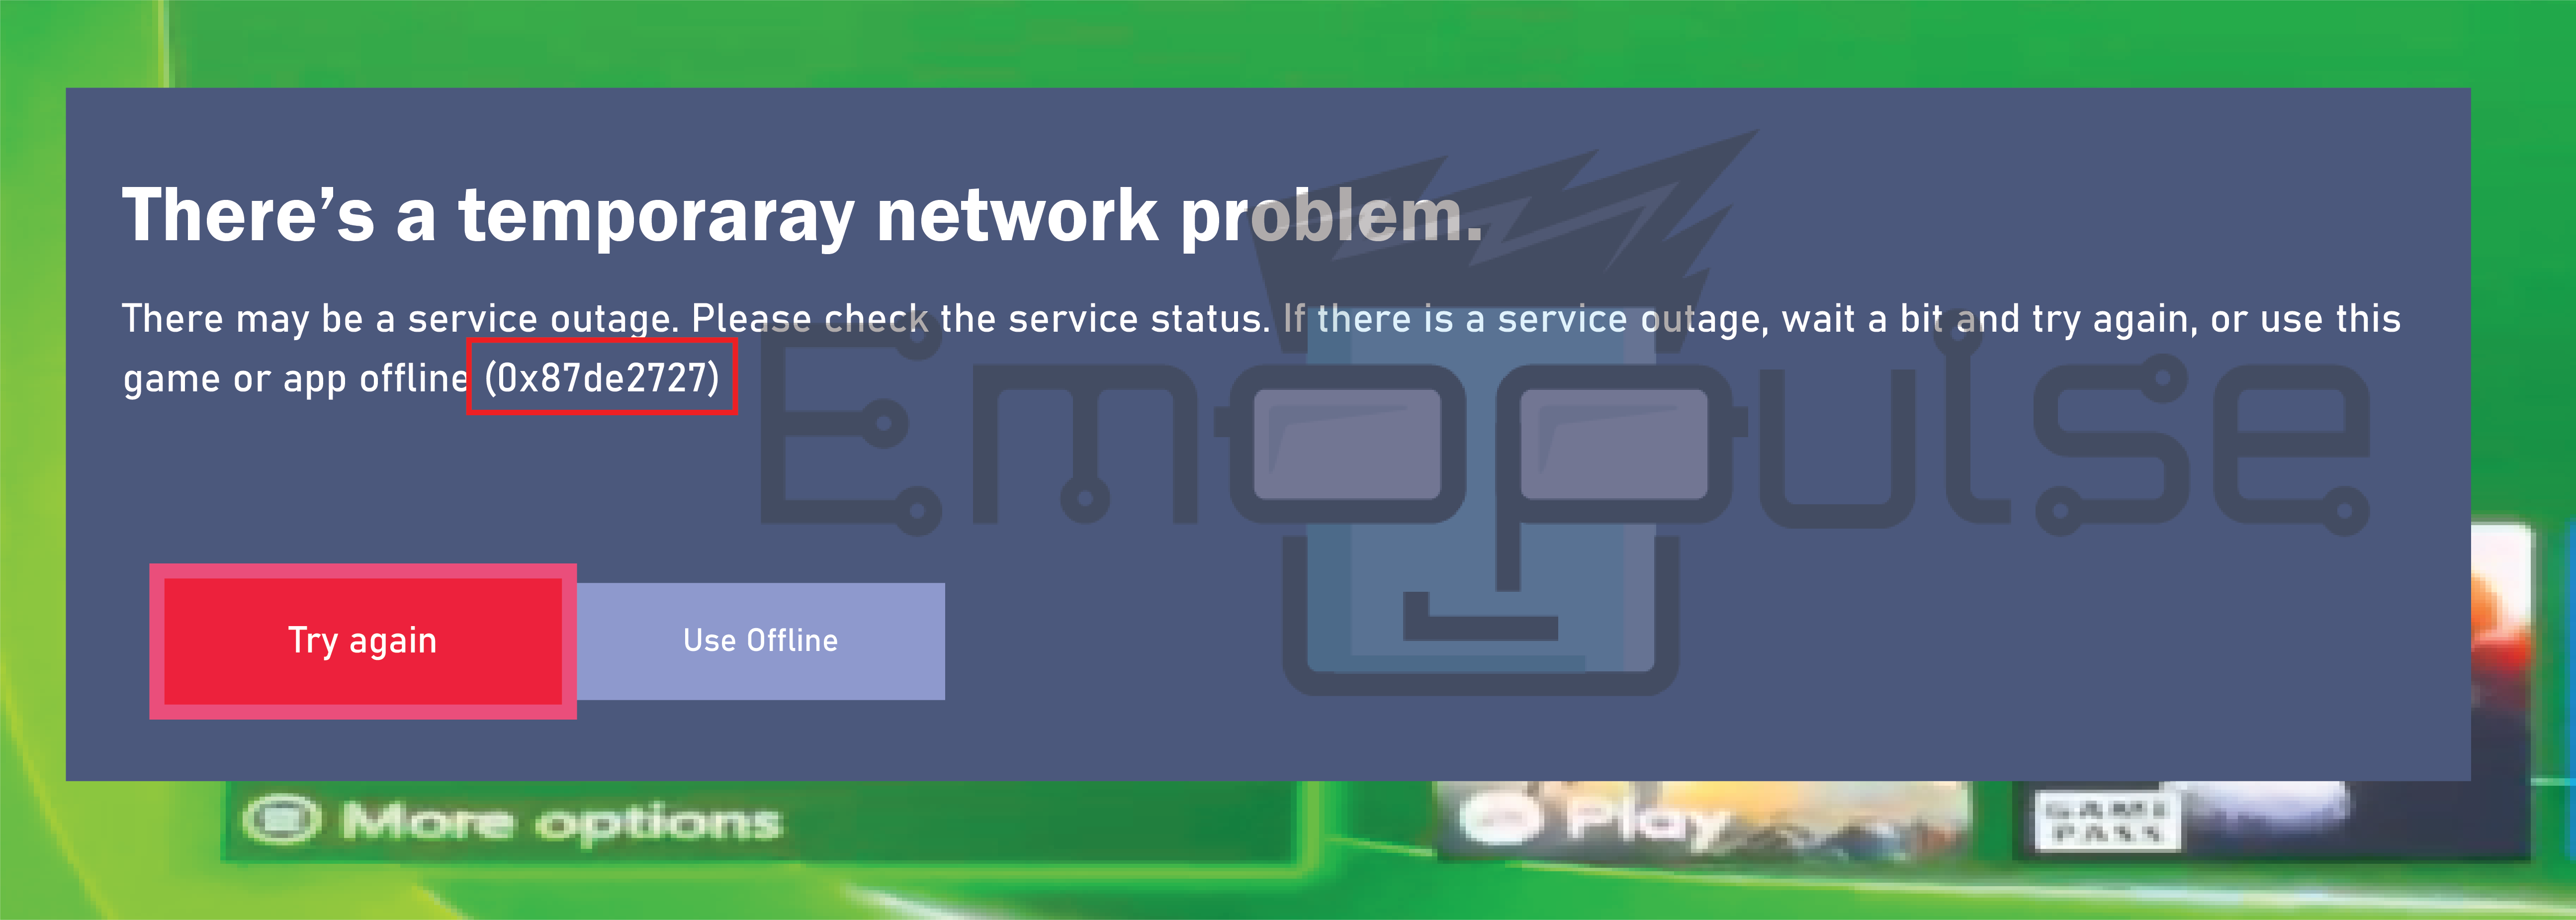 Error message in Xbox (Image credits: Emopulse